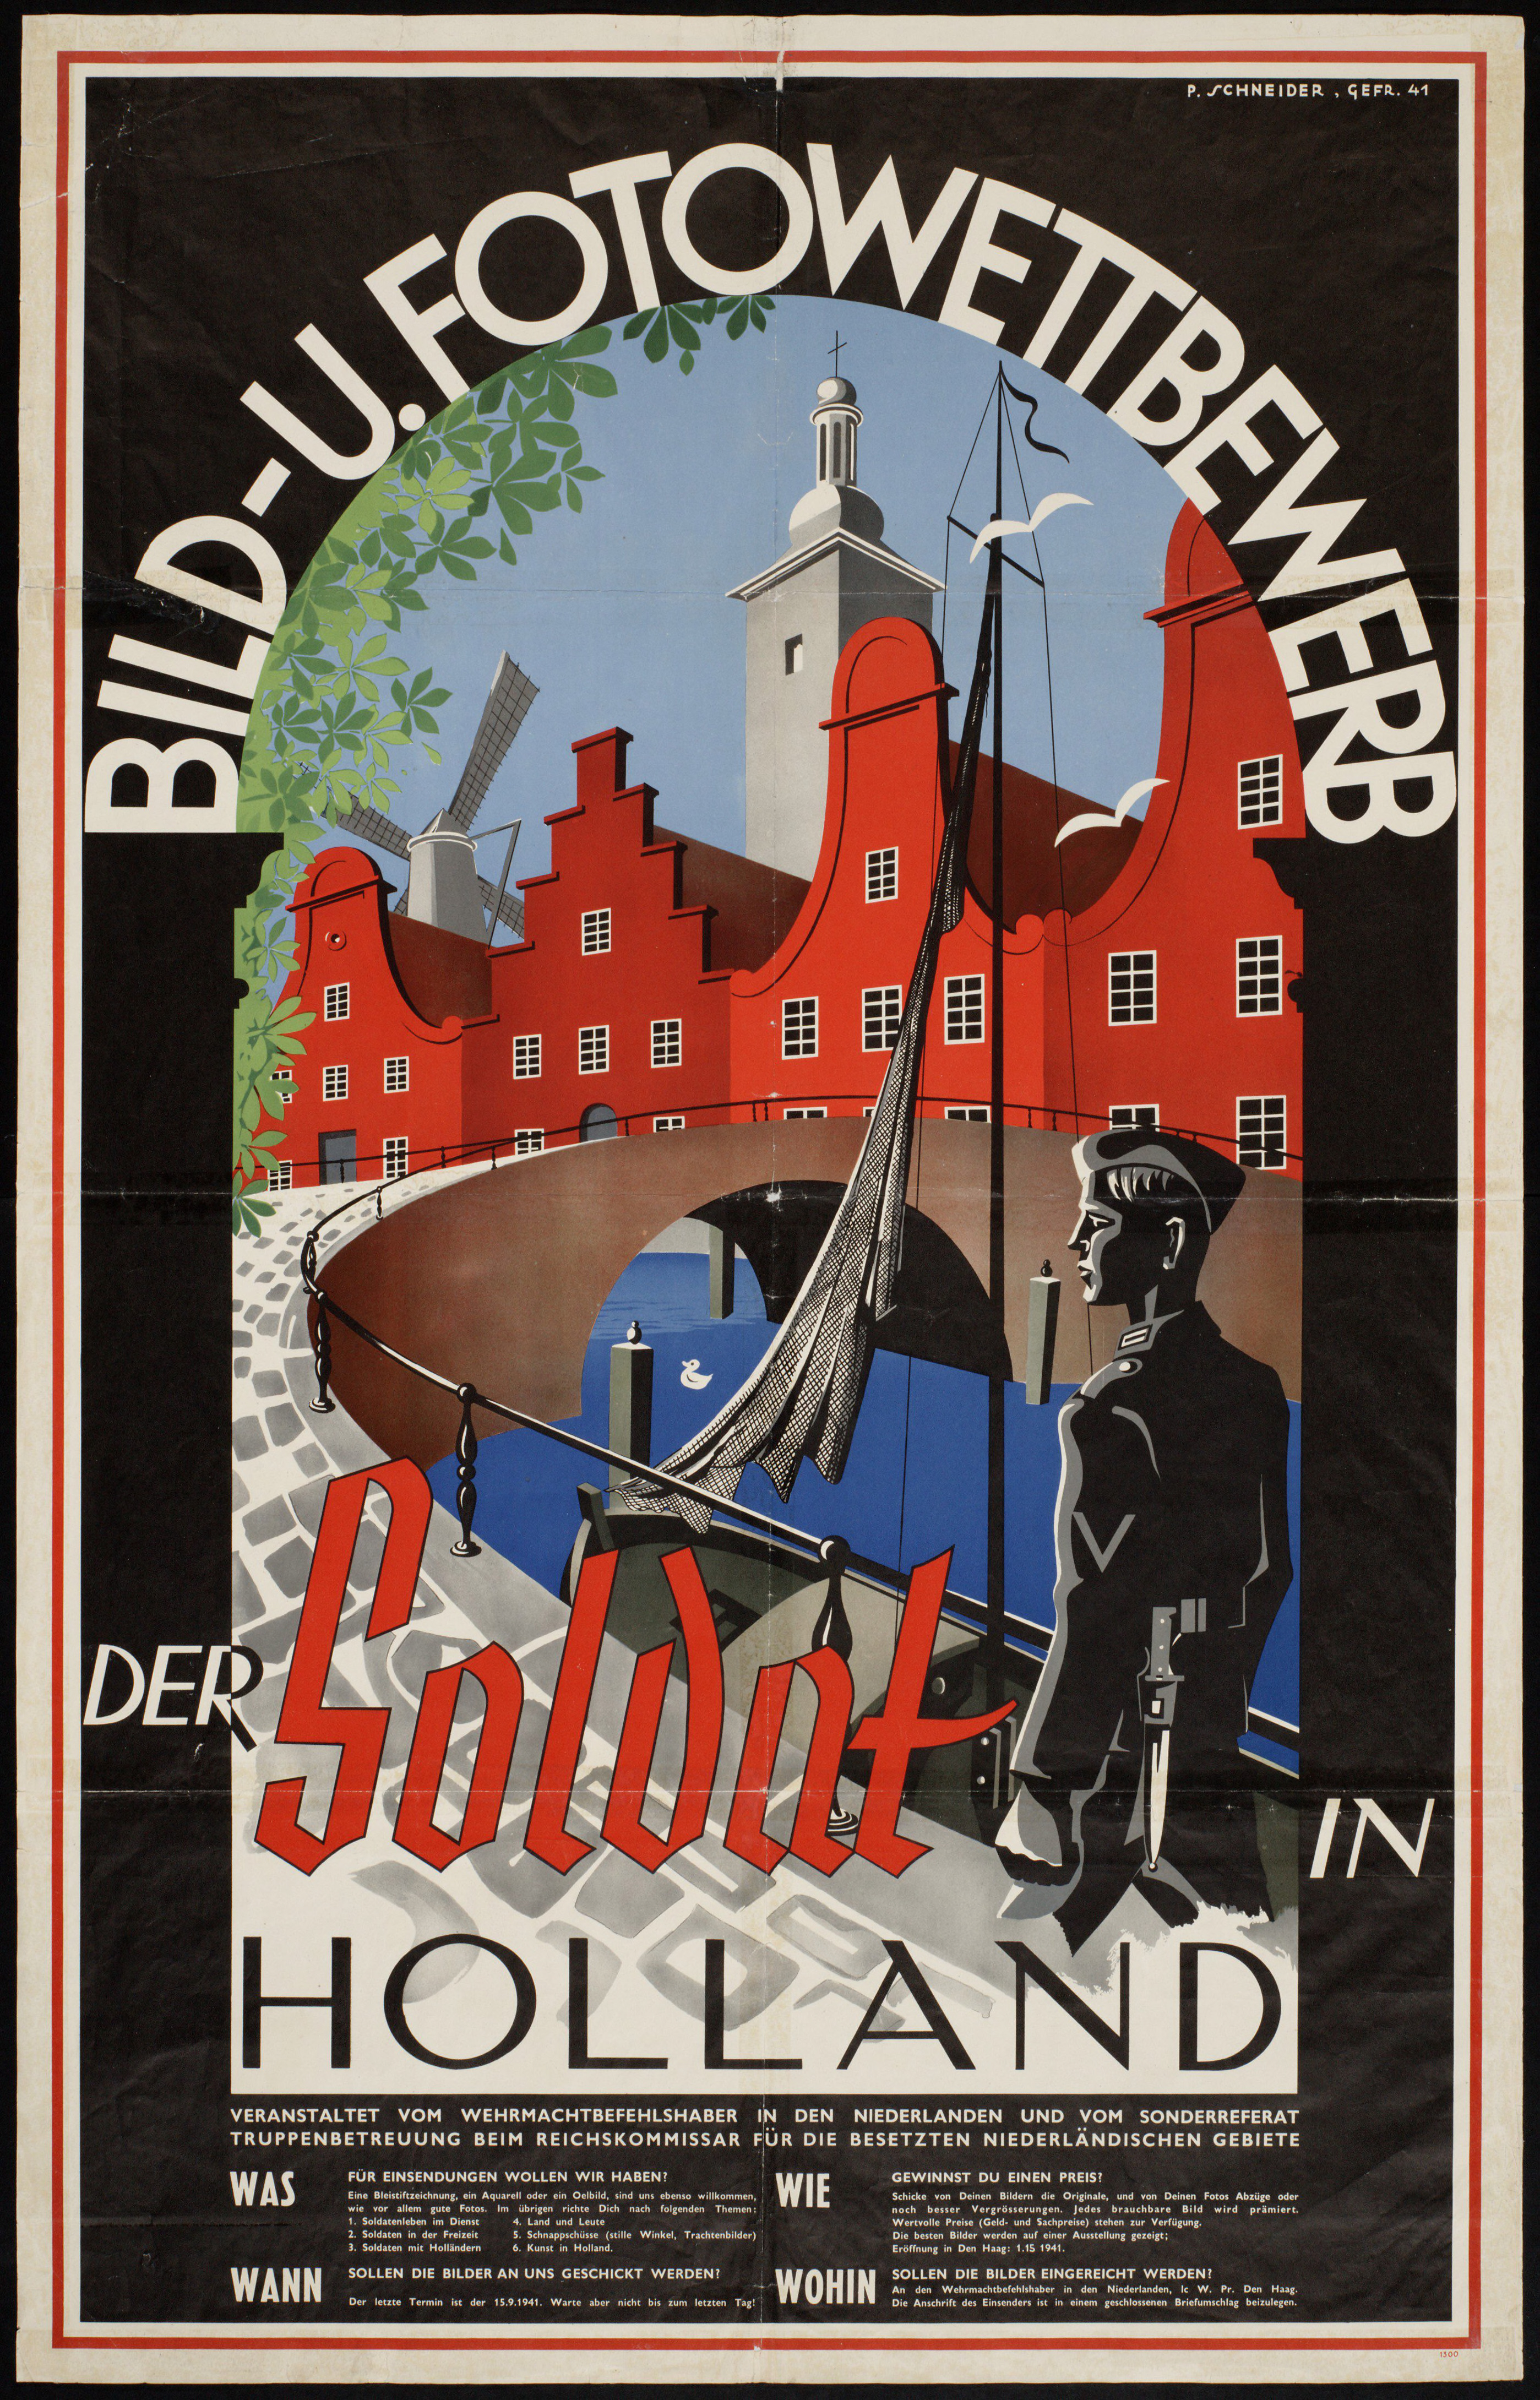 Affiche voor de tentoonstelling Der Soldat in Holland, die vanaf oktober 1941 in Den Haag te zien was